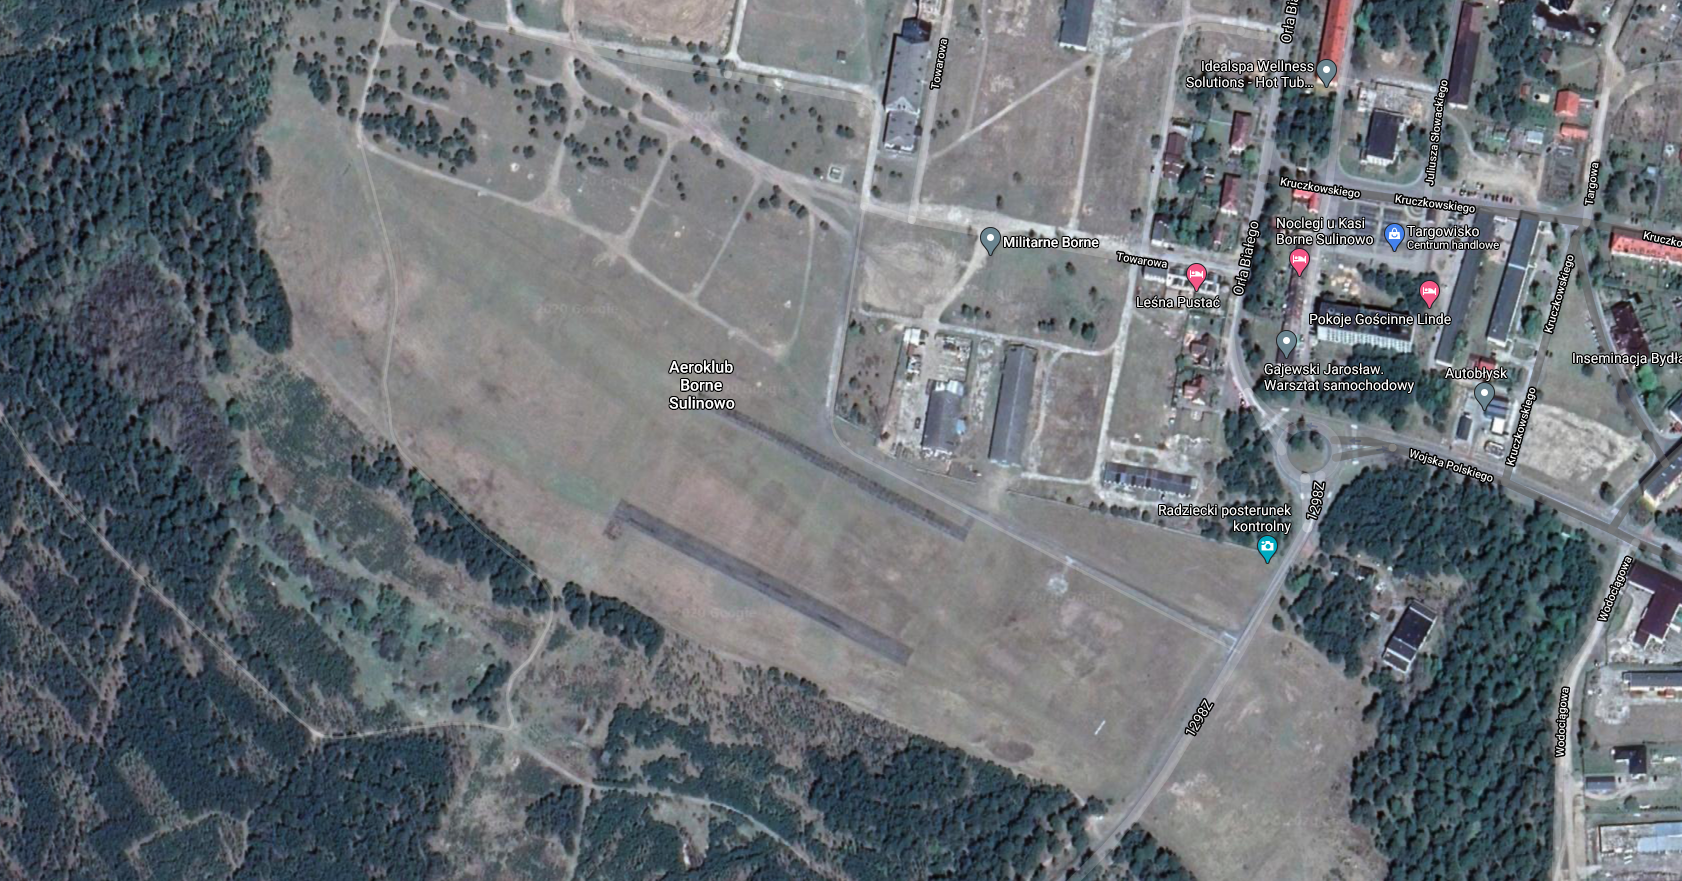 Borne Sulinowo airport. 2021. Satellite image